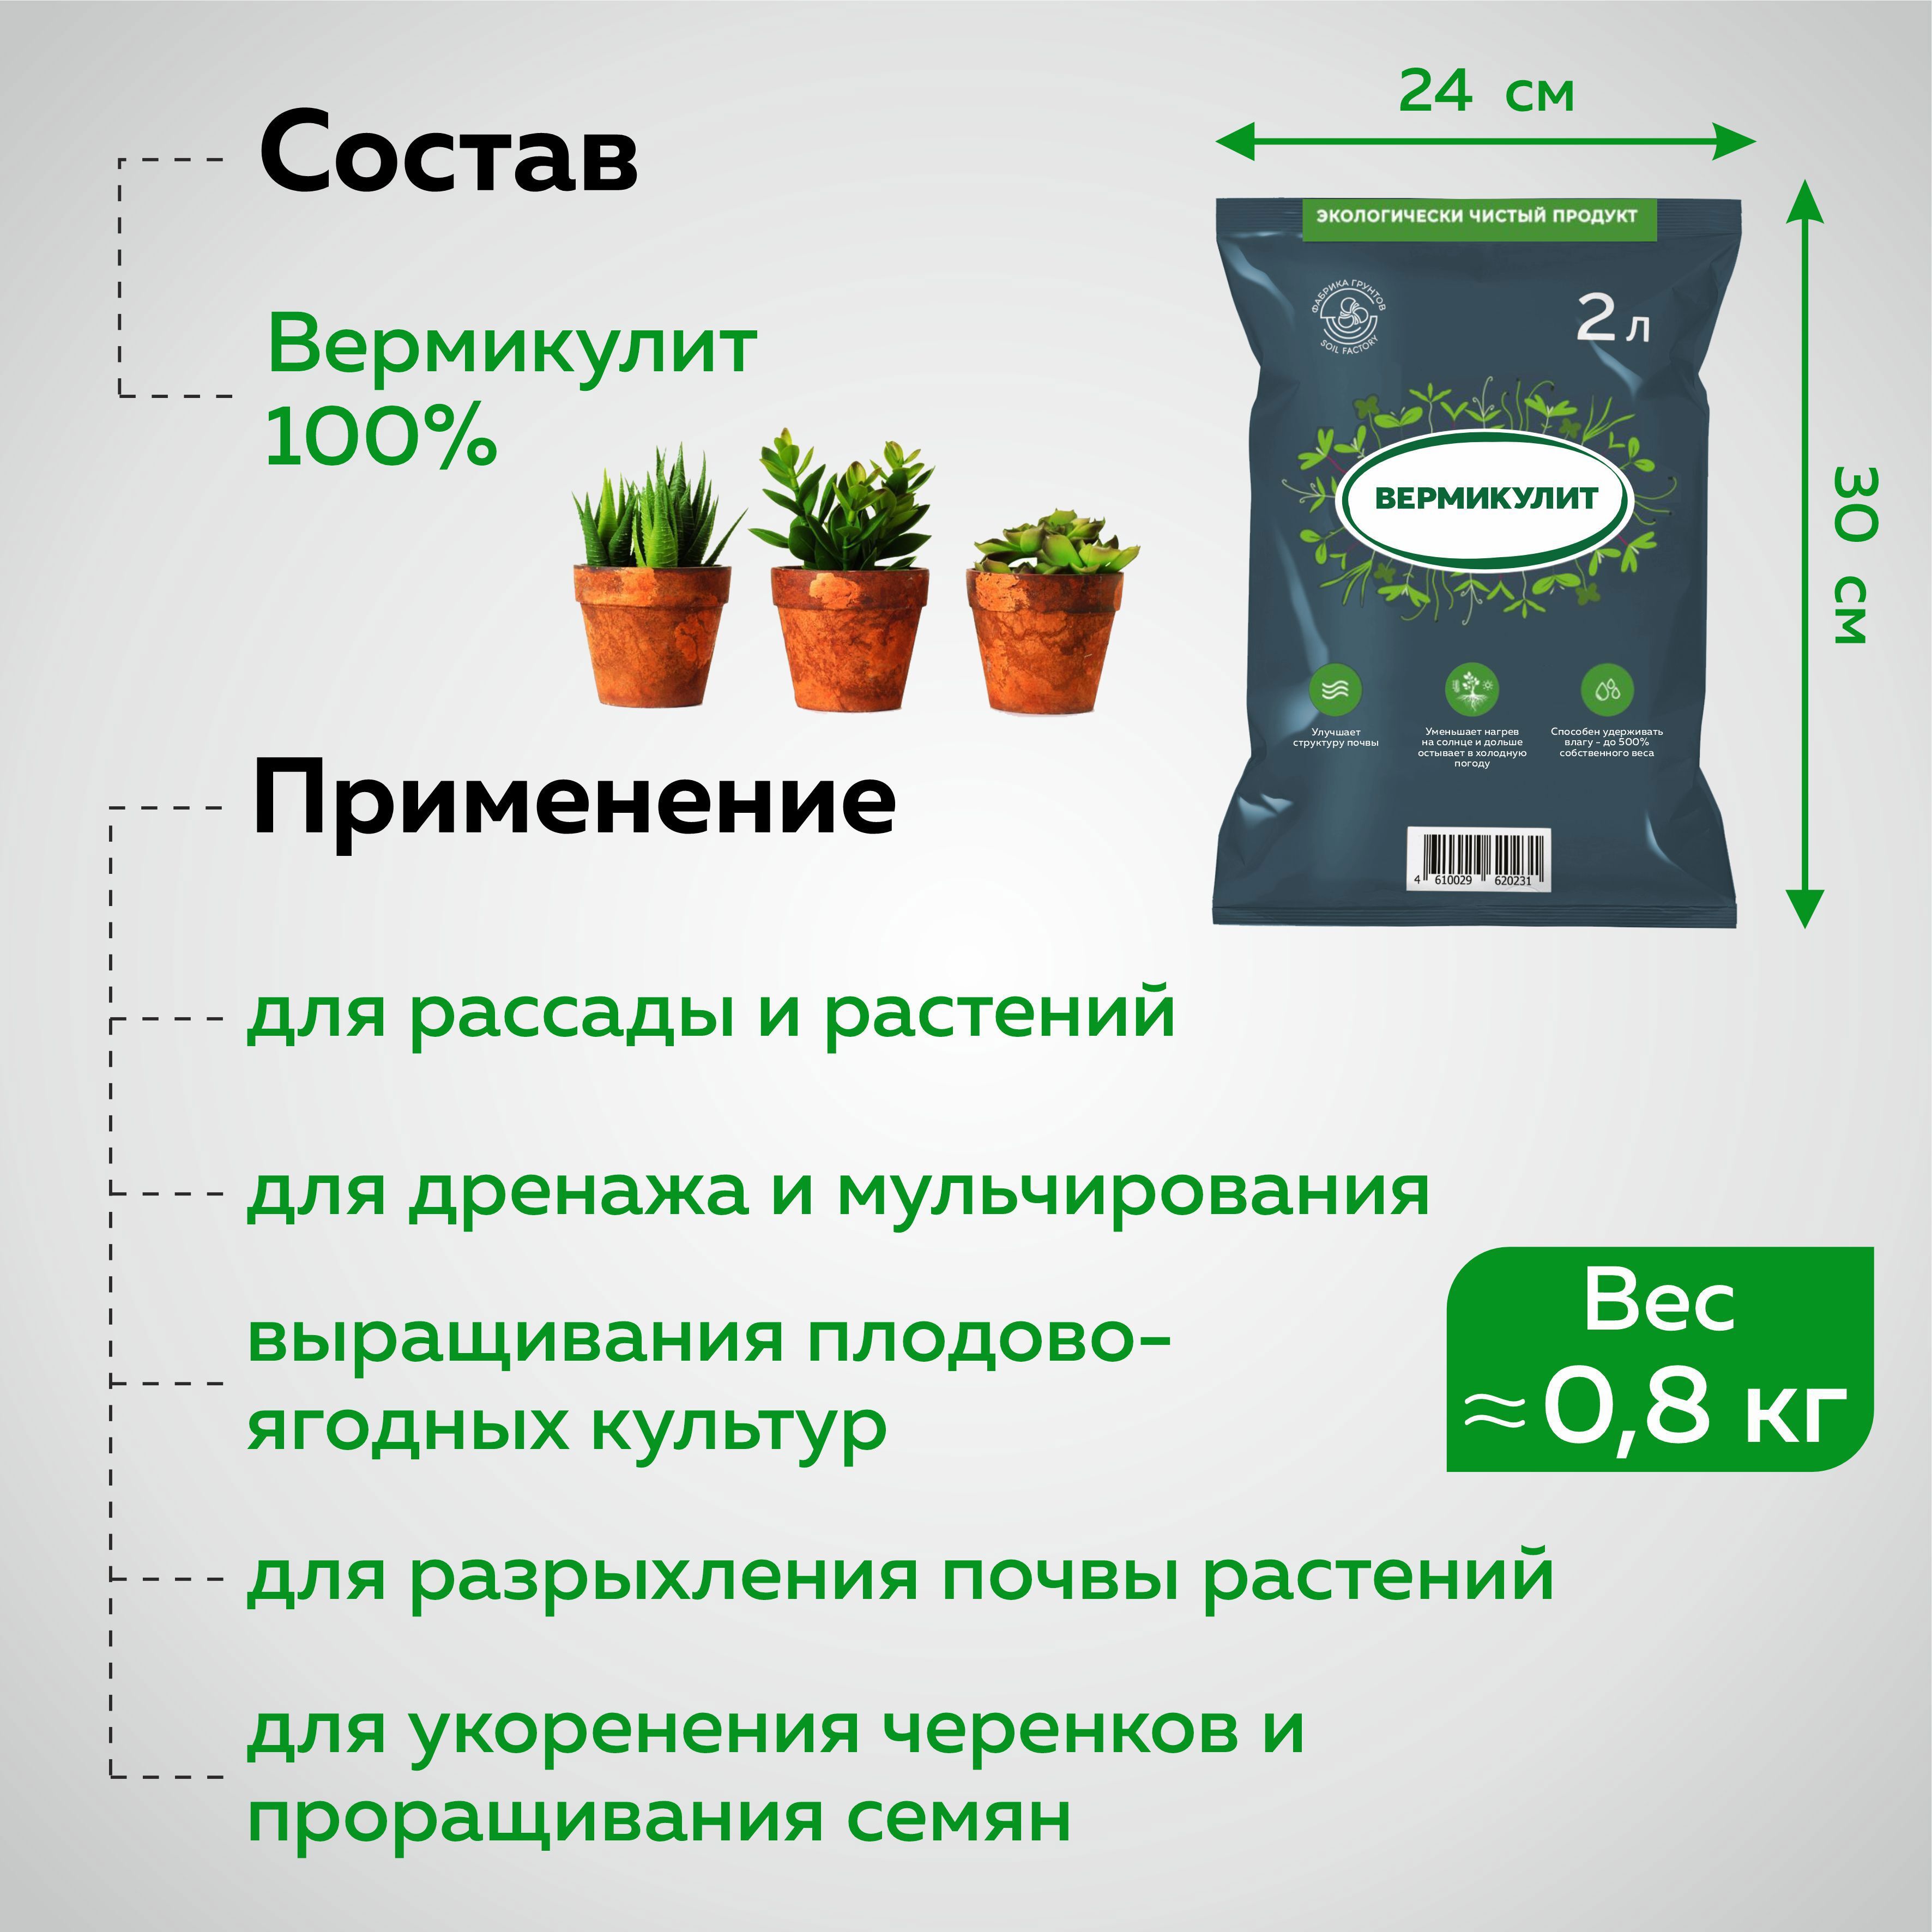  для растений и цветов Грядки Лейки 2 л по цене 119 ₽/шт .